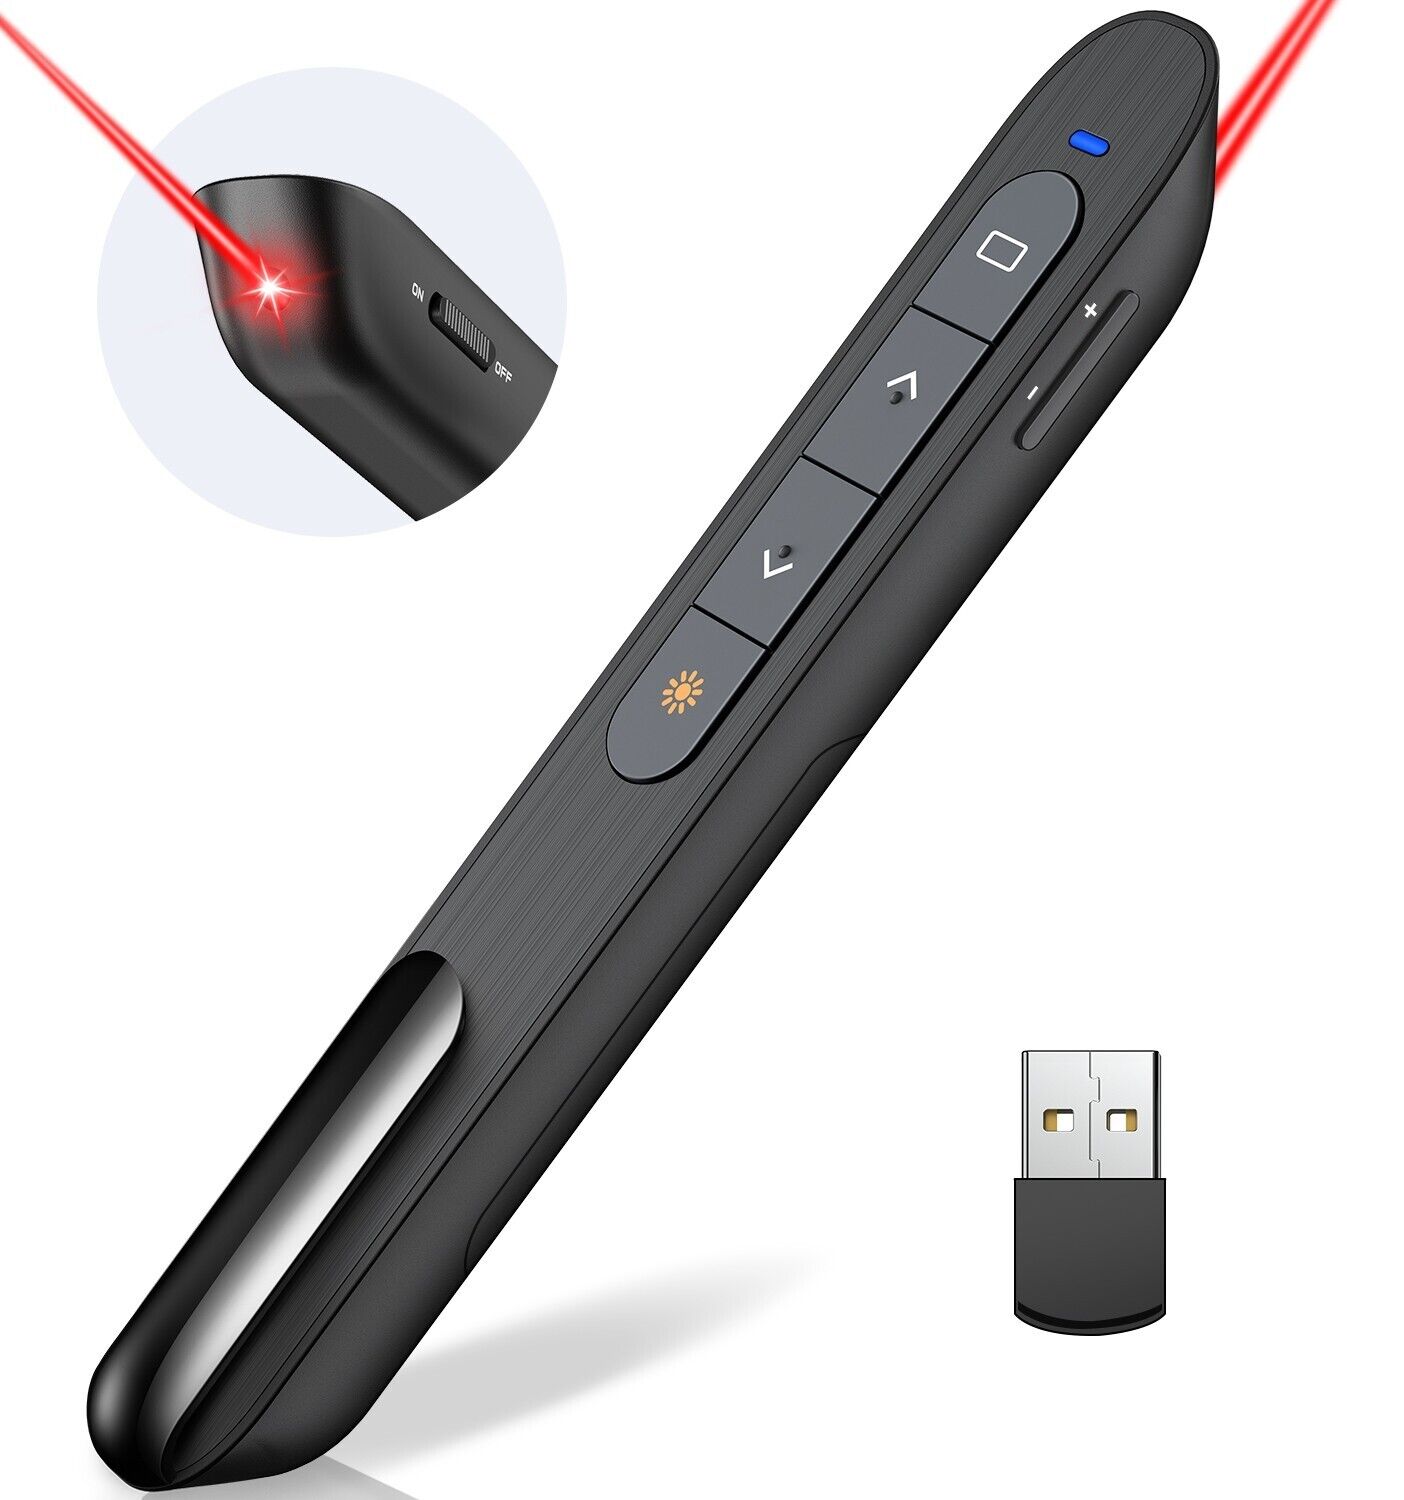 Power point Presentation Remote Control Wireless USB PPT Presenter Laser Pointer